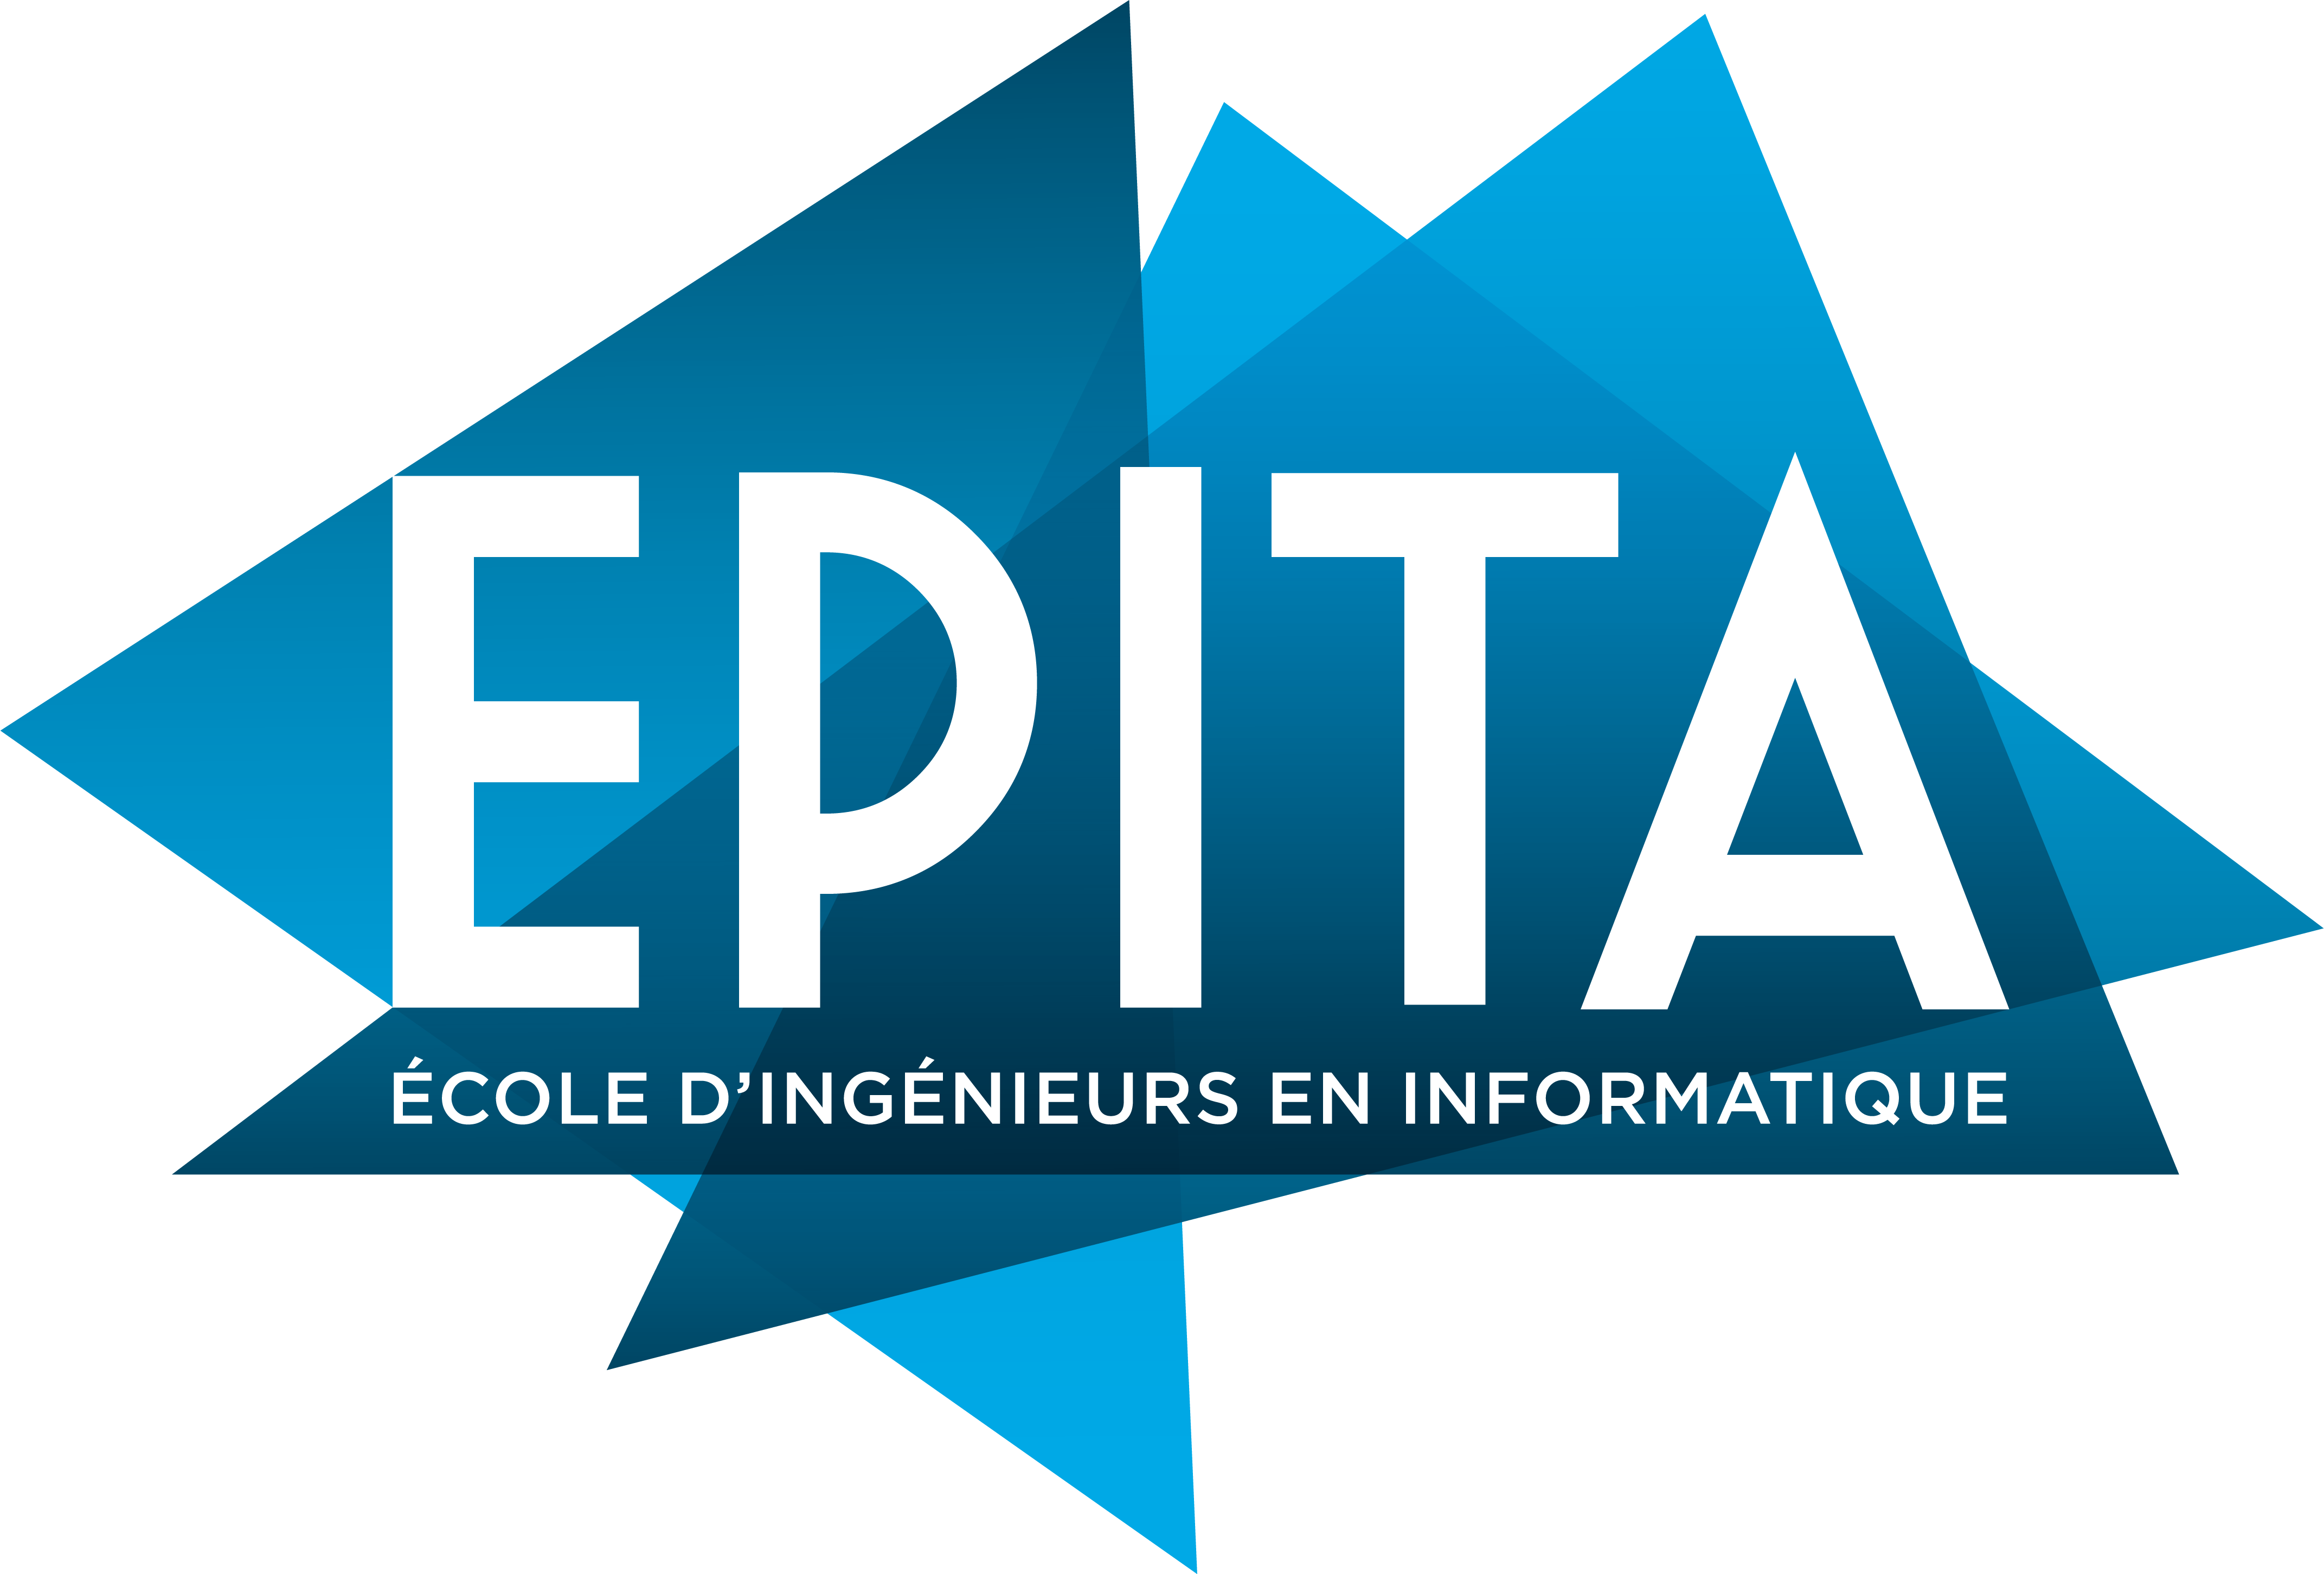 Epita logo